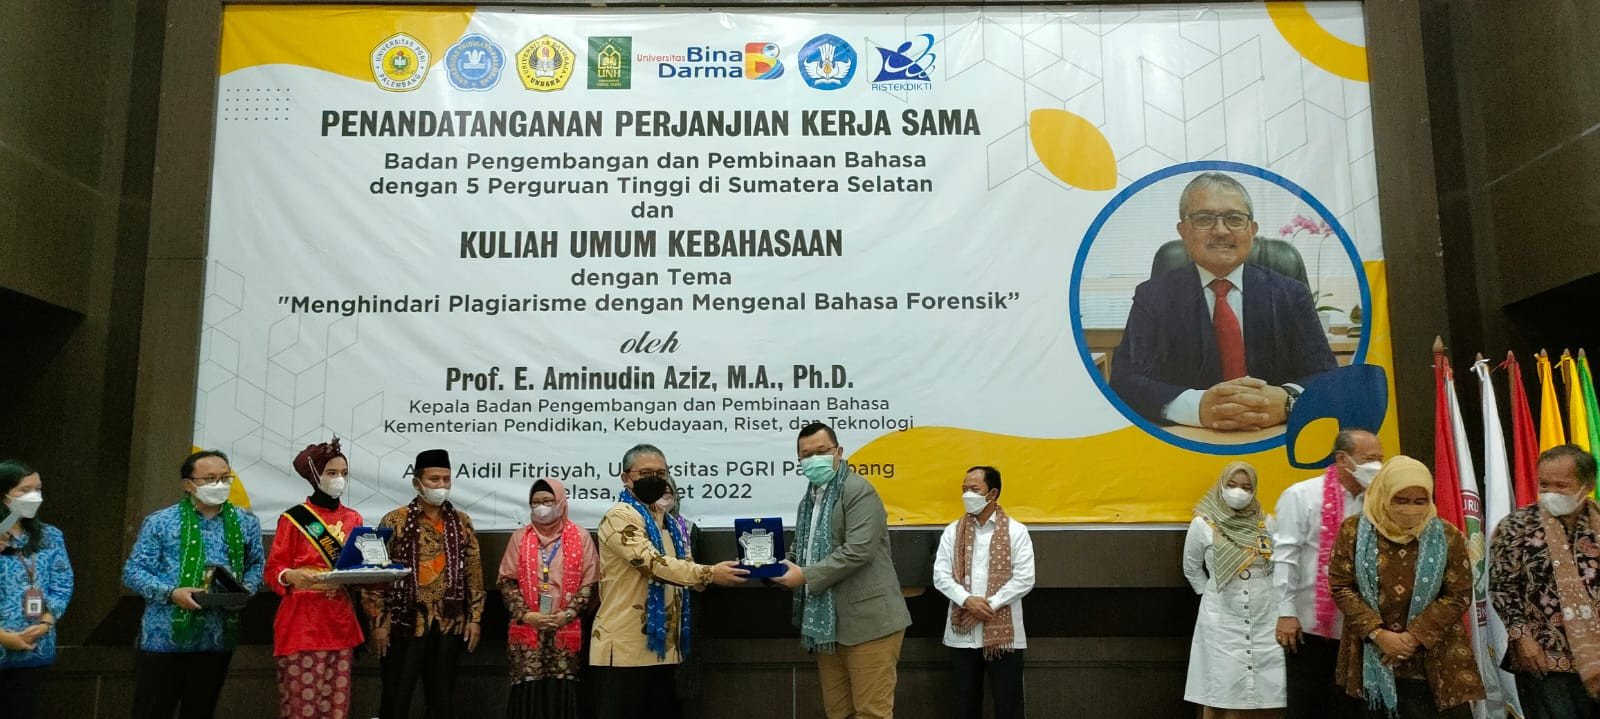 Penandatanganan Perjanjian Kerja sama 5 Perguruan Tinggi di Sumatera Selatan